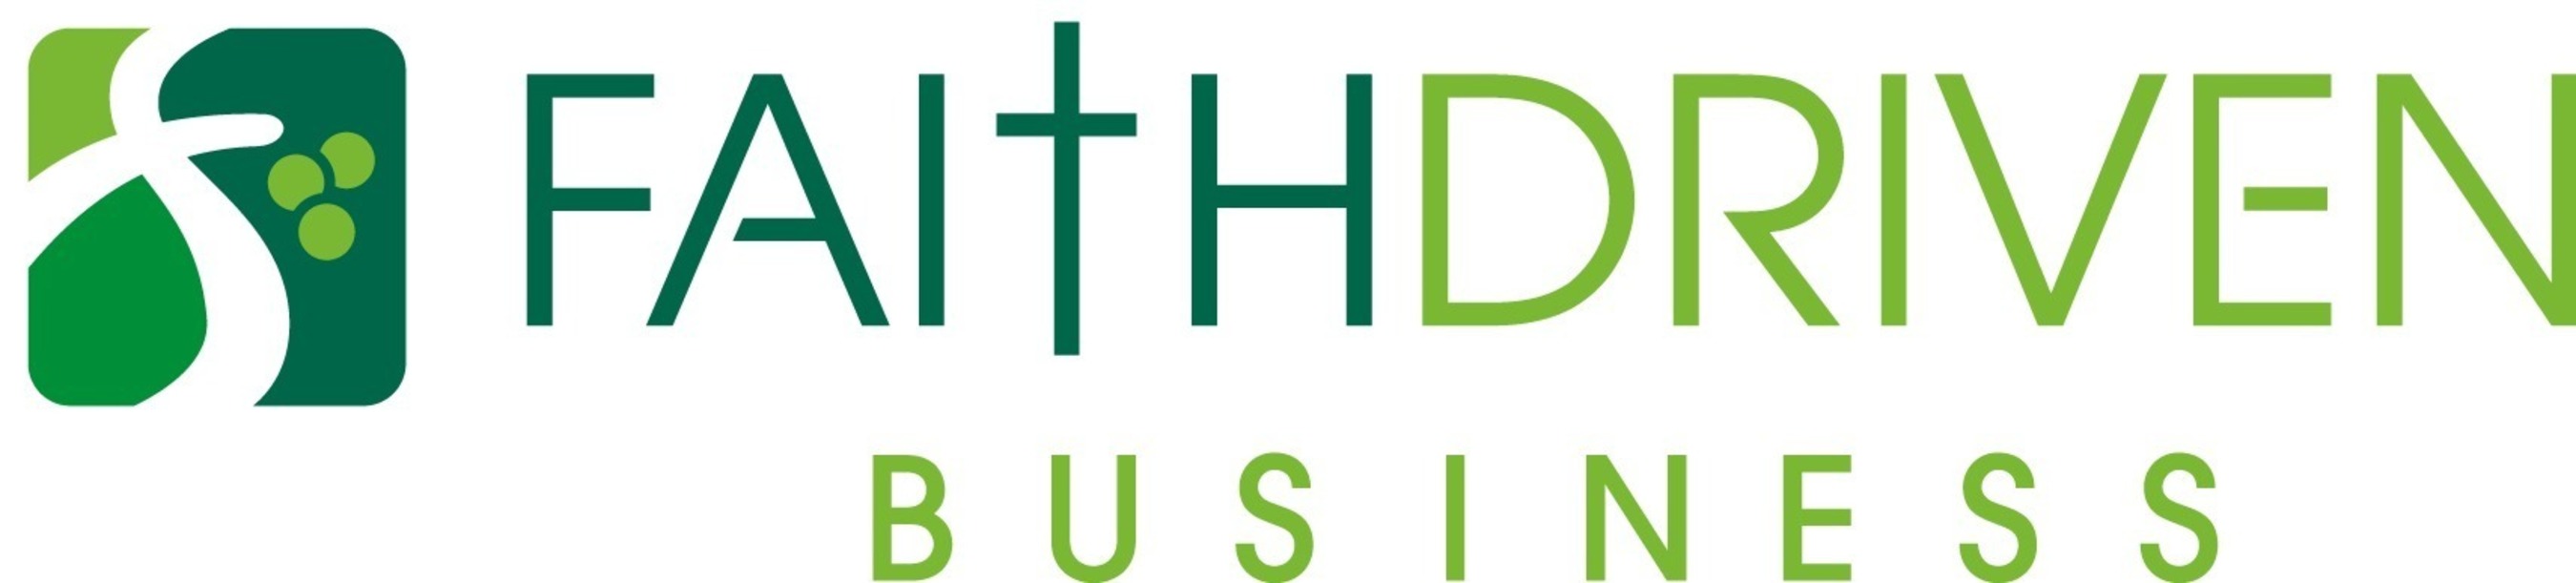 Faith Driven Business  (PRNewsFoto/In HIS Name HR LLC)